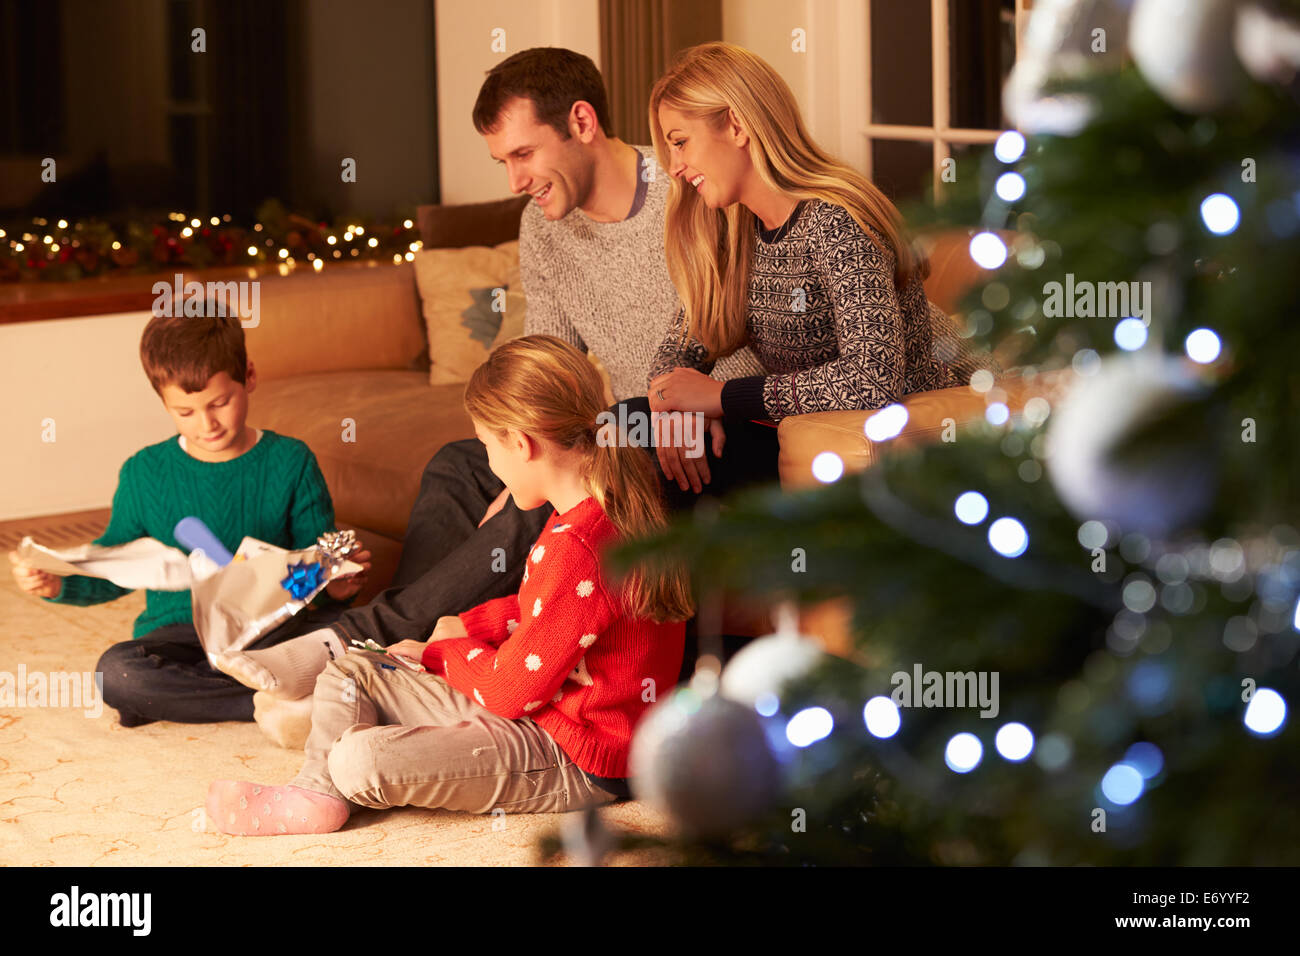 Familia desenvolviendo regalos por árbol de Navidad Foto de stock